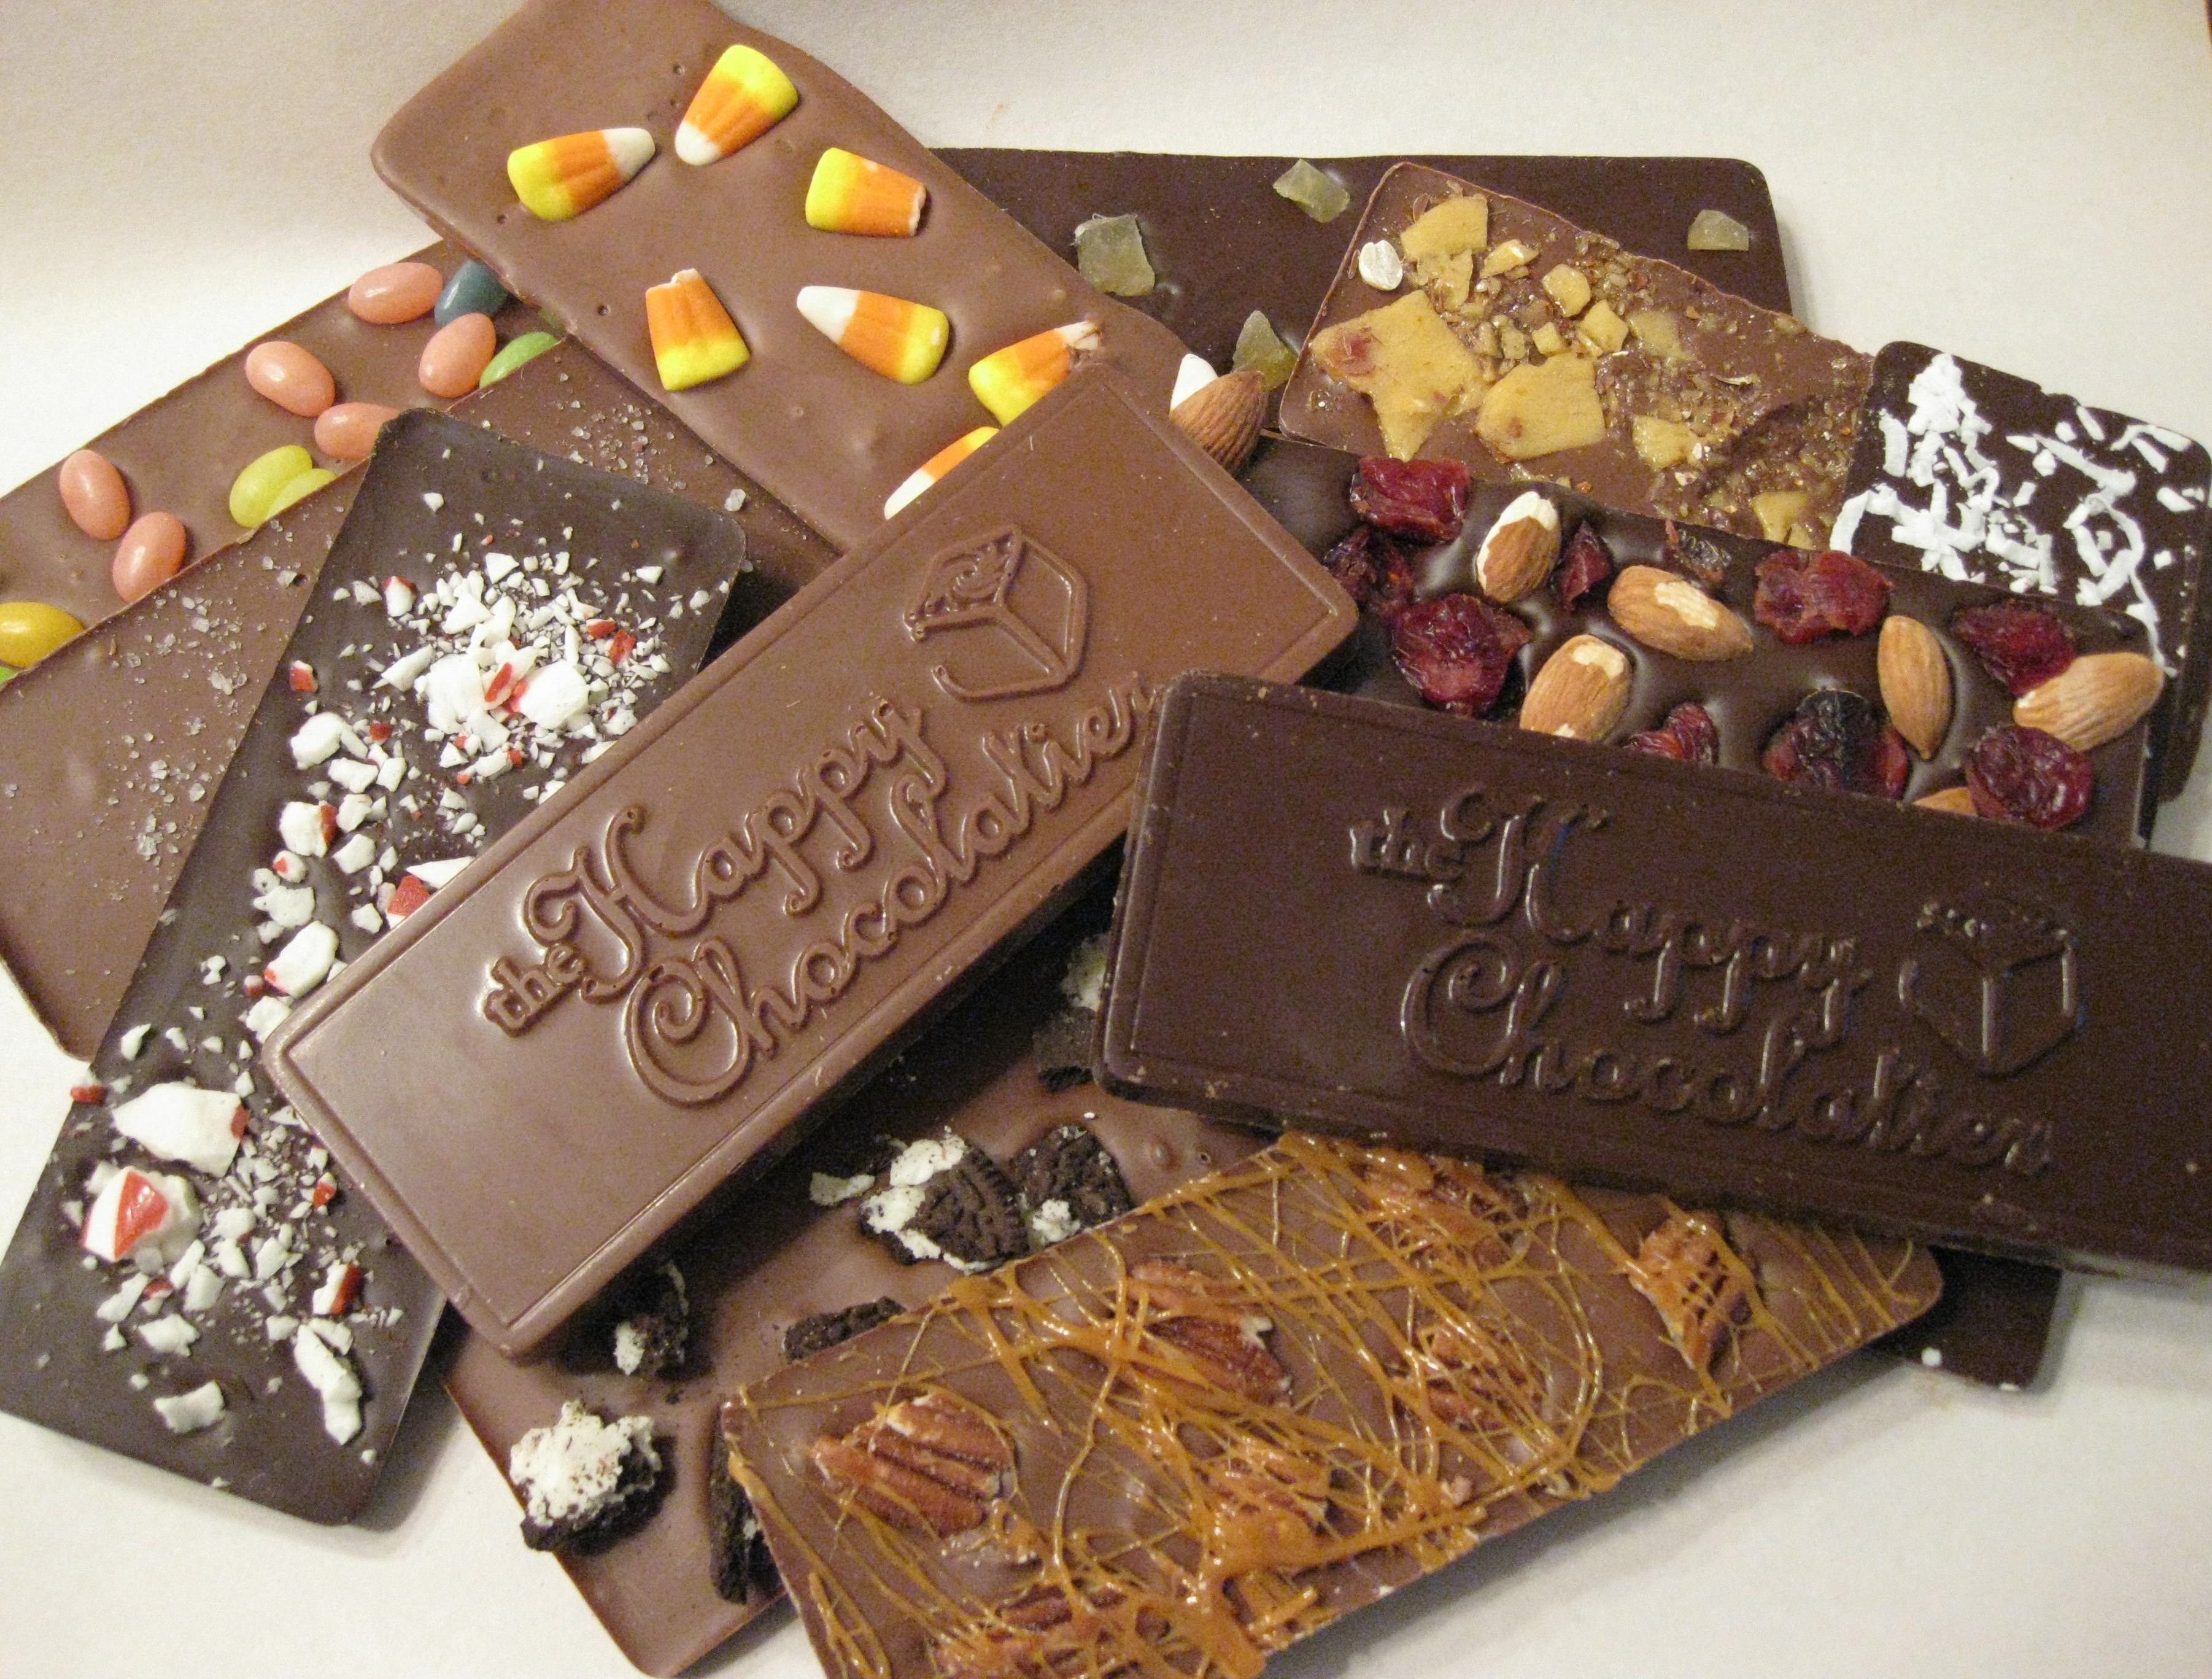 Ну шоколадом. Бельгийский шоколад плитка. Шоколадная плитка Derby. Derby шоколад плитка. Необычный шоколад.